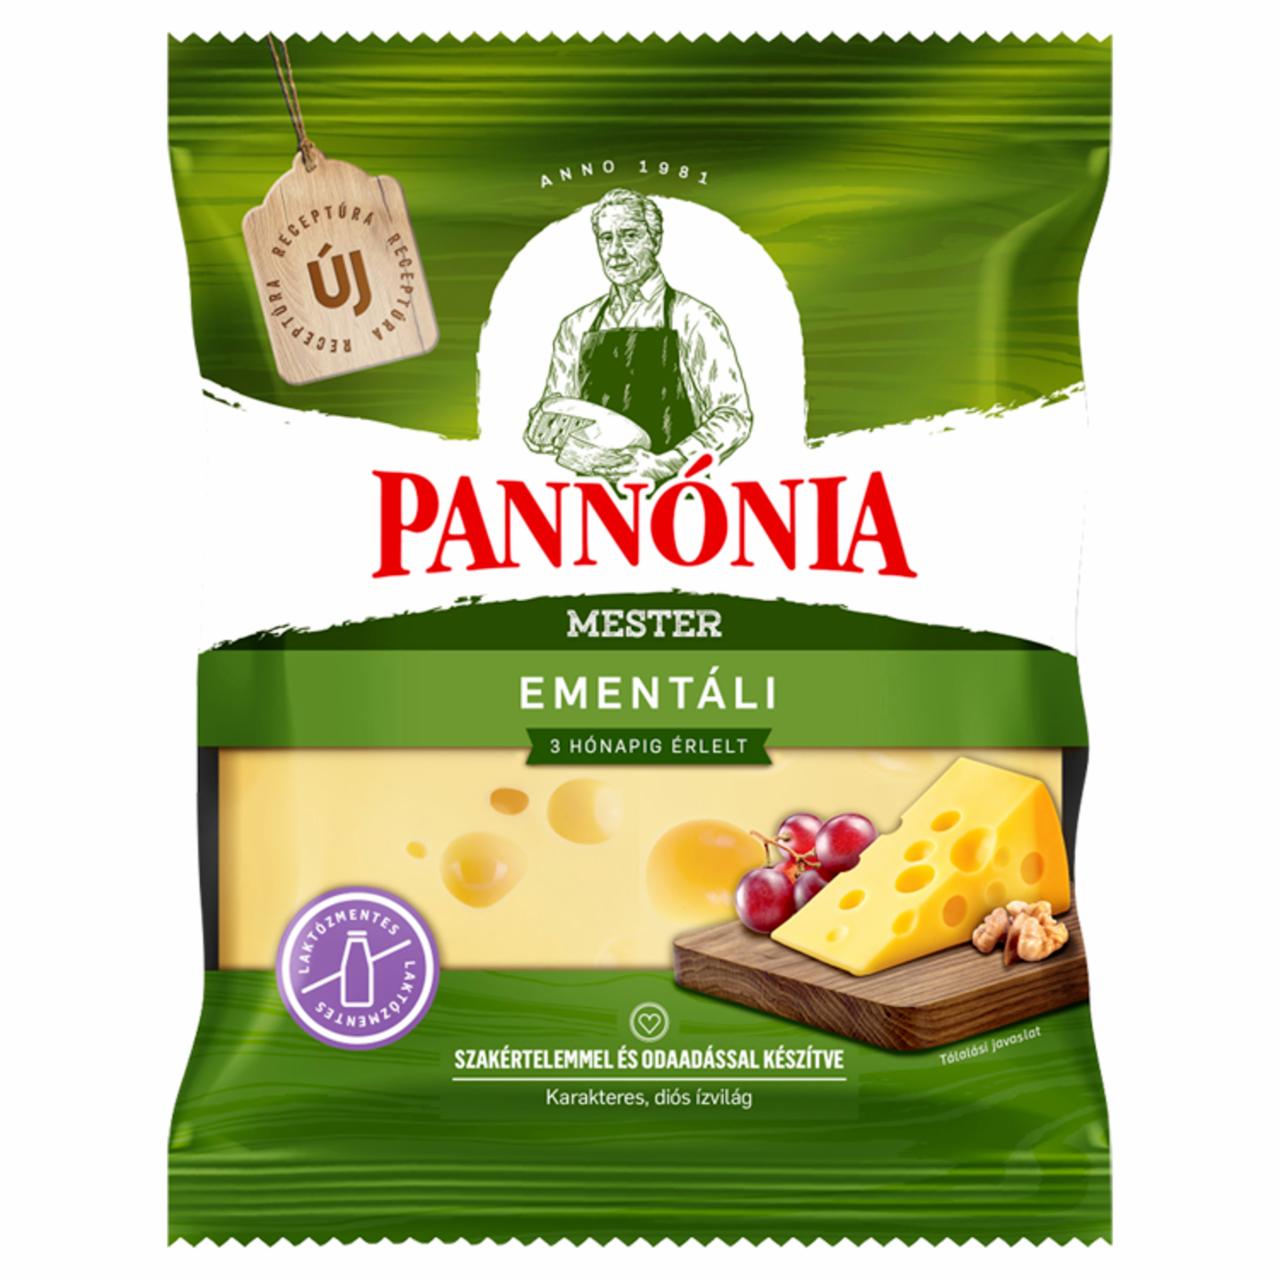 Képek - Pannónia Mester Ementáli darabolt, zsíros, kemény, erjedési lyukas sajt 200 g